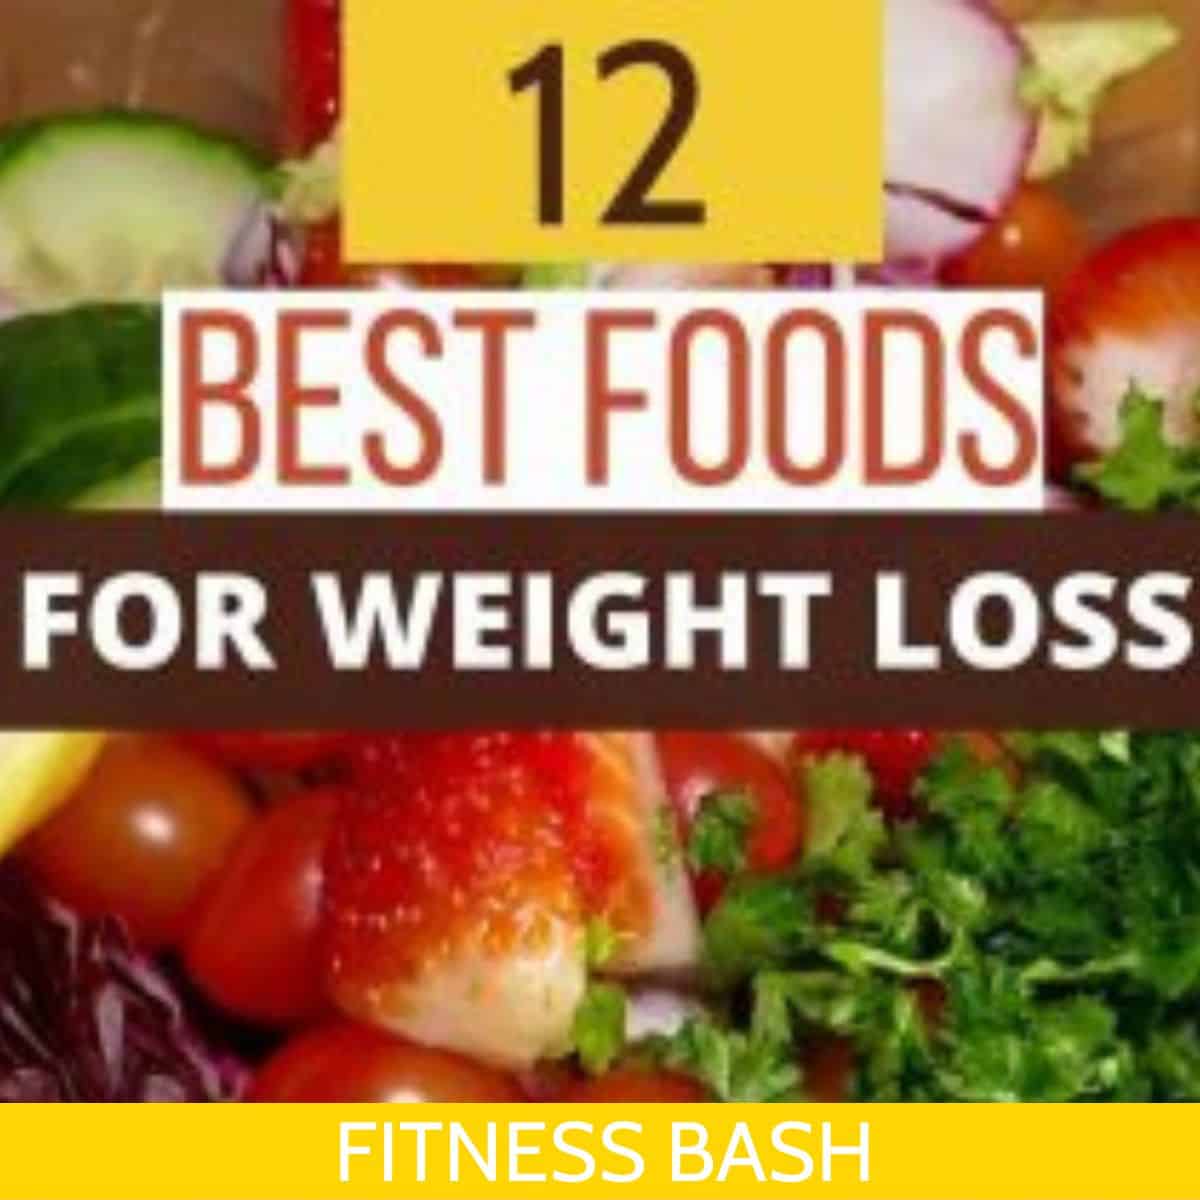 best foods for weightloss